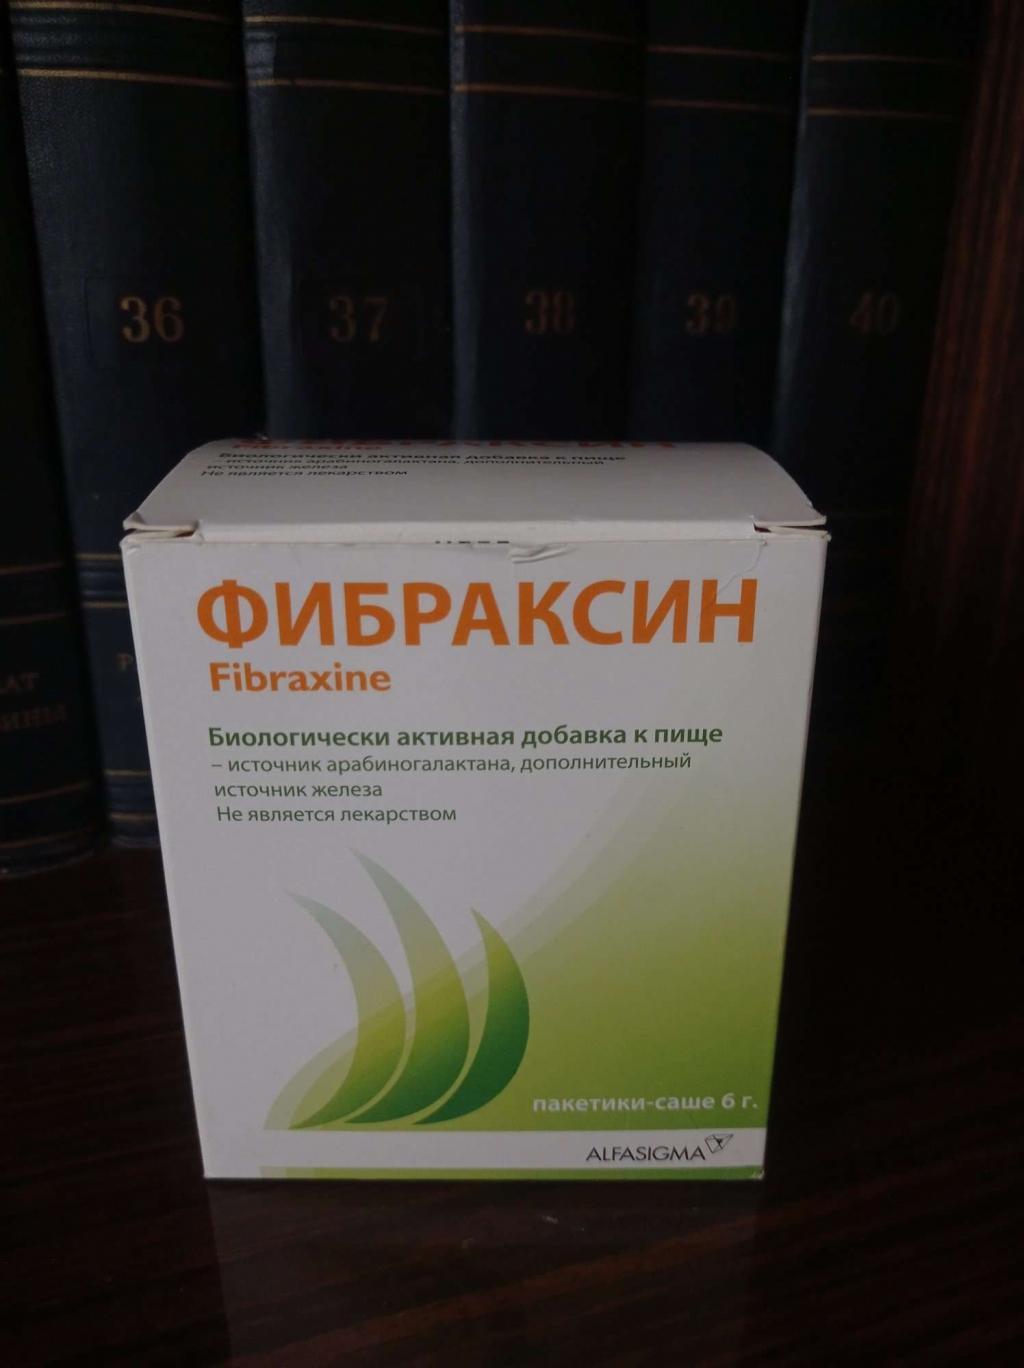 Фибраксин (Fibraxine) - После диеты вес закрепился, рекомендую